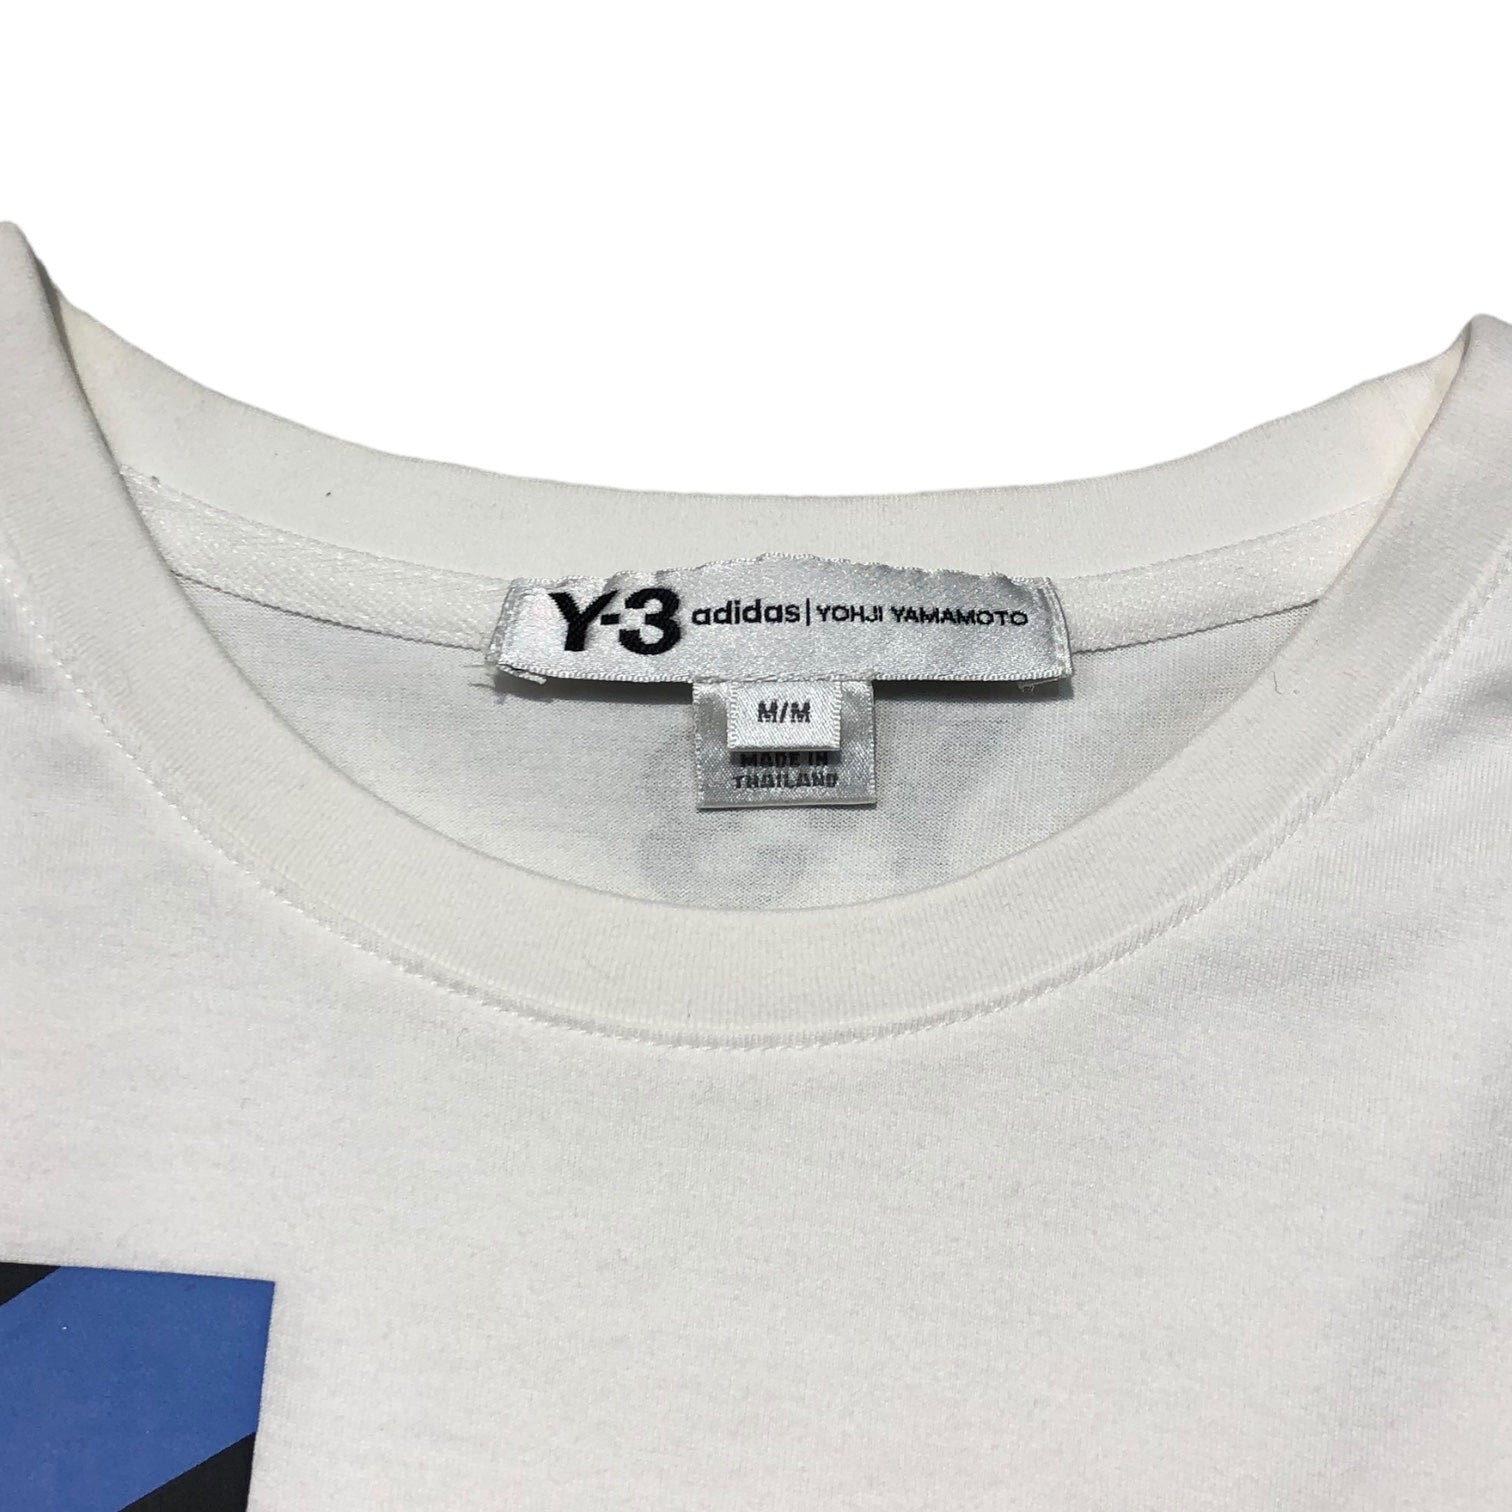 Y-3(ワイスリー) 20SS U SWM MC SS TEE ロゴ グラフィック 半袖 Tシャツ FN5728 M ホワイト YOHJI YAMAMOTO adidas/ヨウジヤマモト アディダス